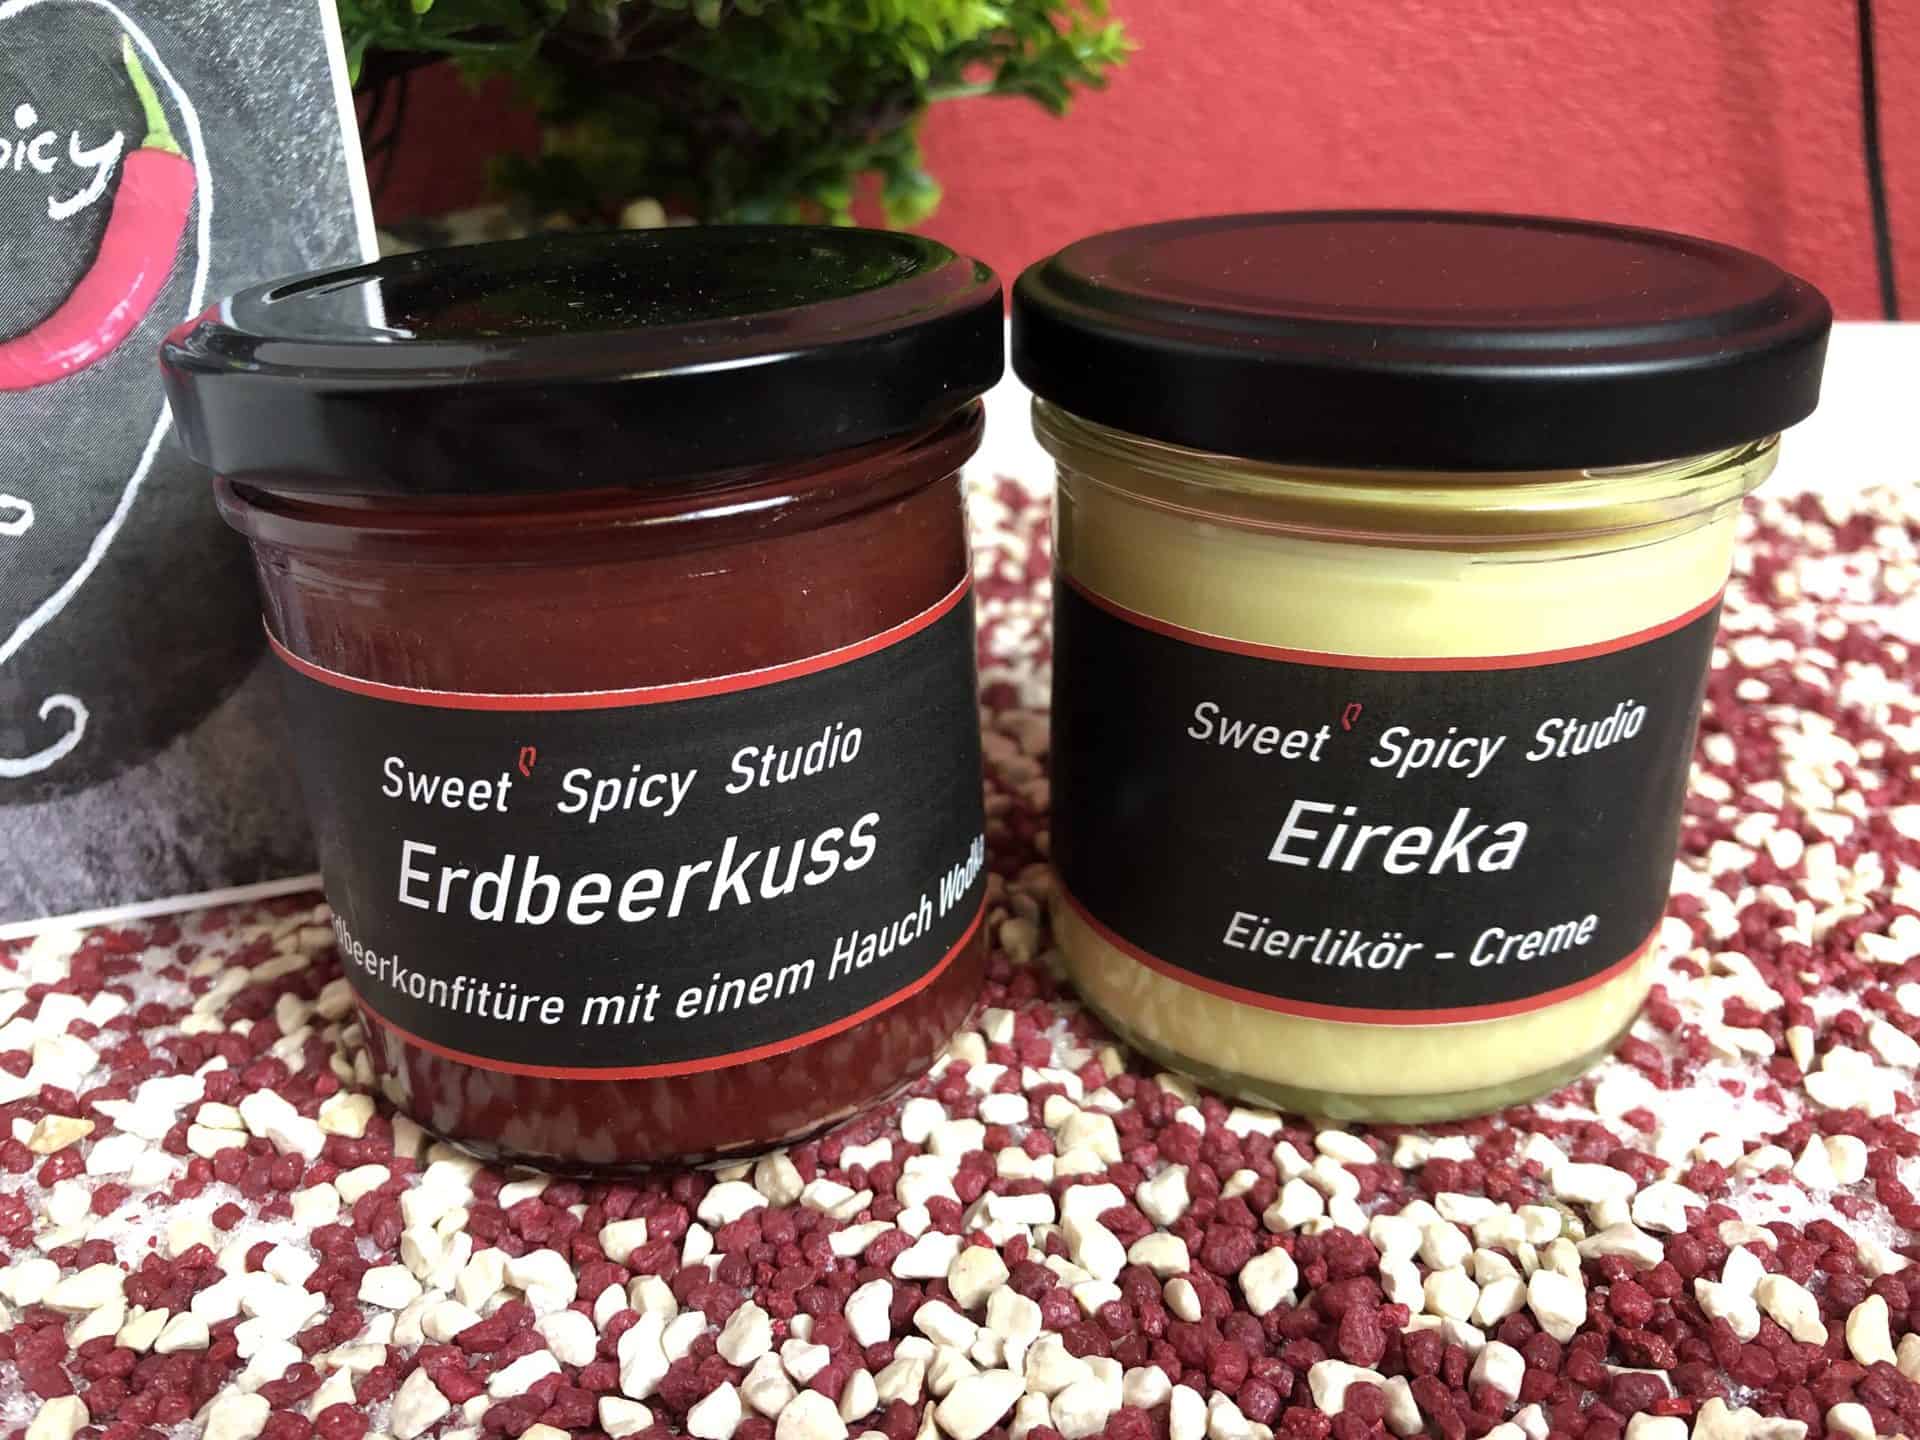 Die Sorten Erdbeerkuss und Eireka von Sweet'n Spicy Studio